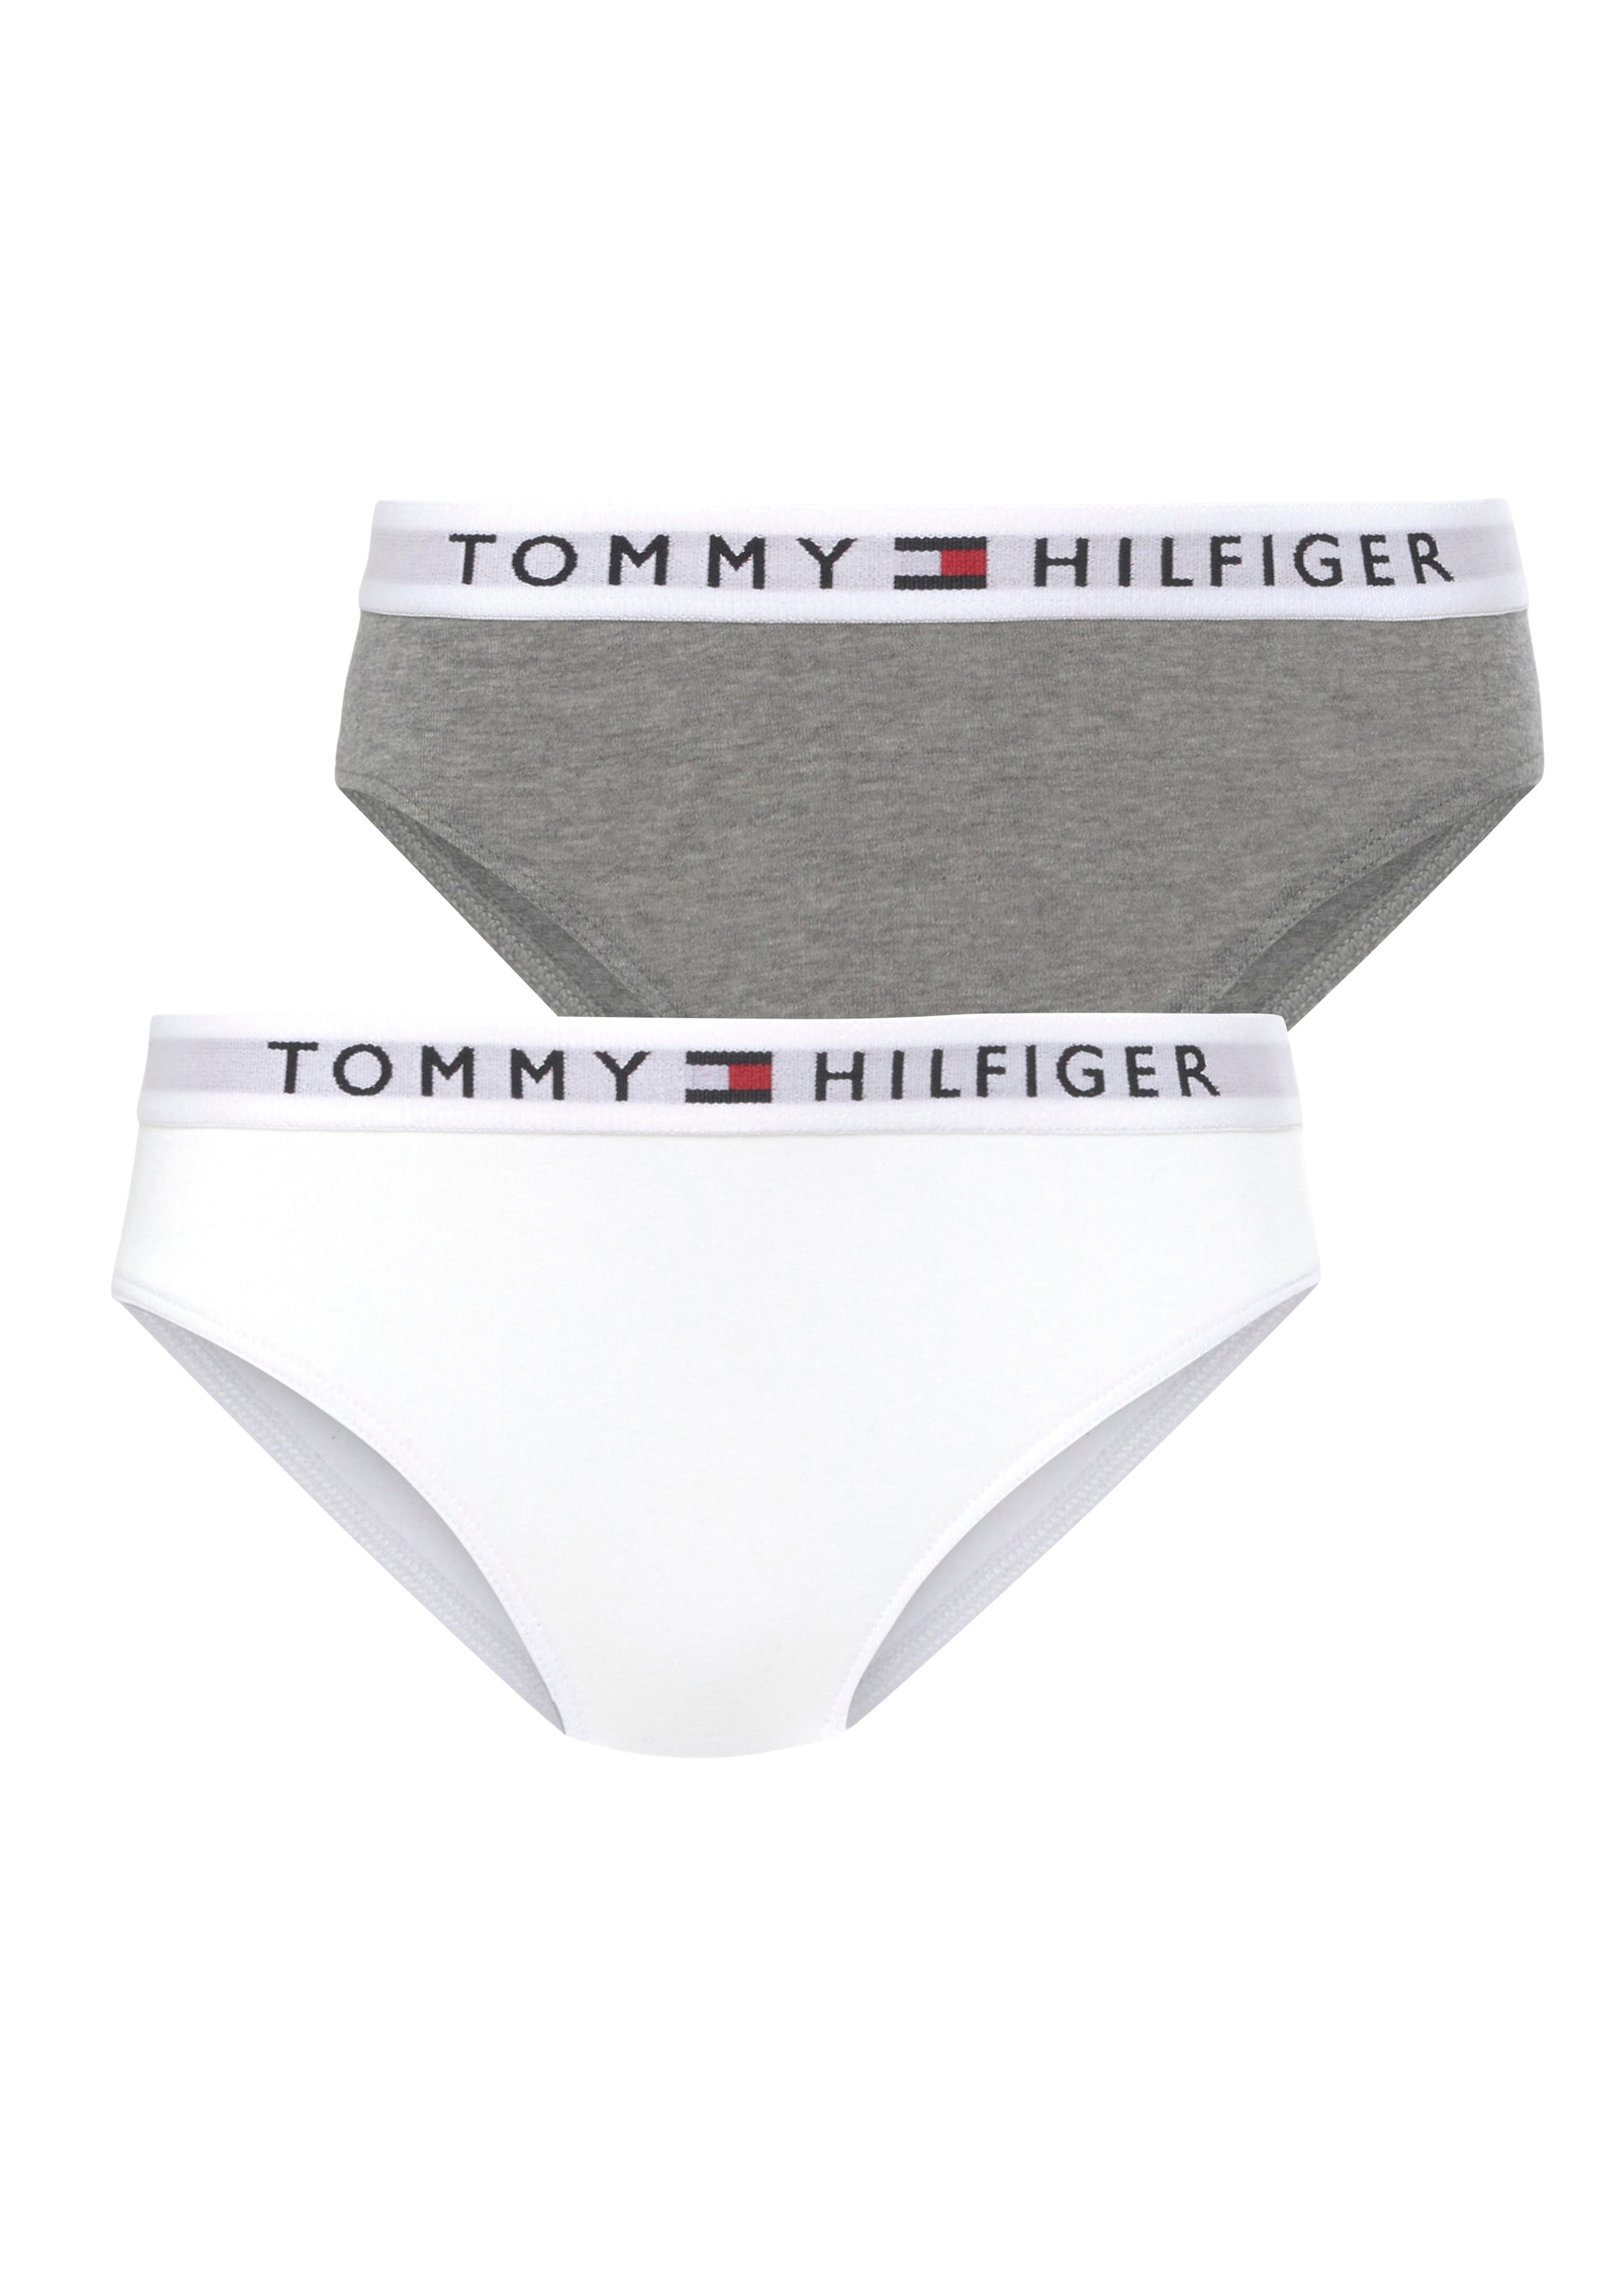 Modische Tommy Hilfiger Underwear Slip, 2 versandkostenfrei (Packung, bestellen aus Bio-Baumwolle St., 2er-Pack)